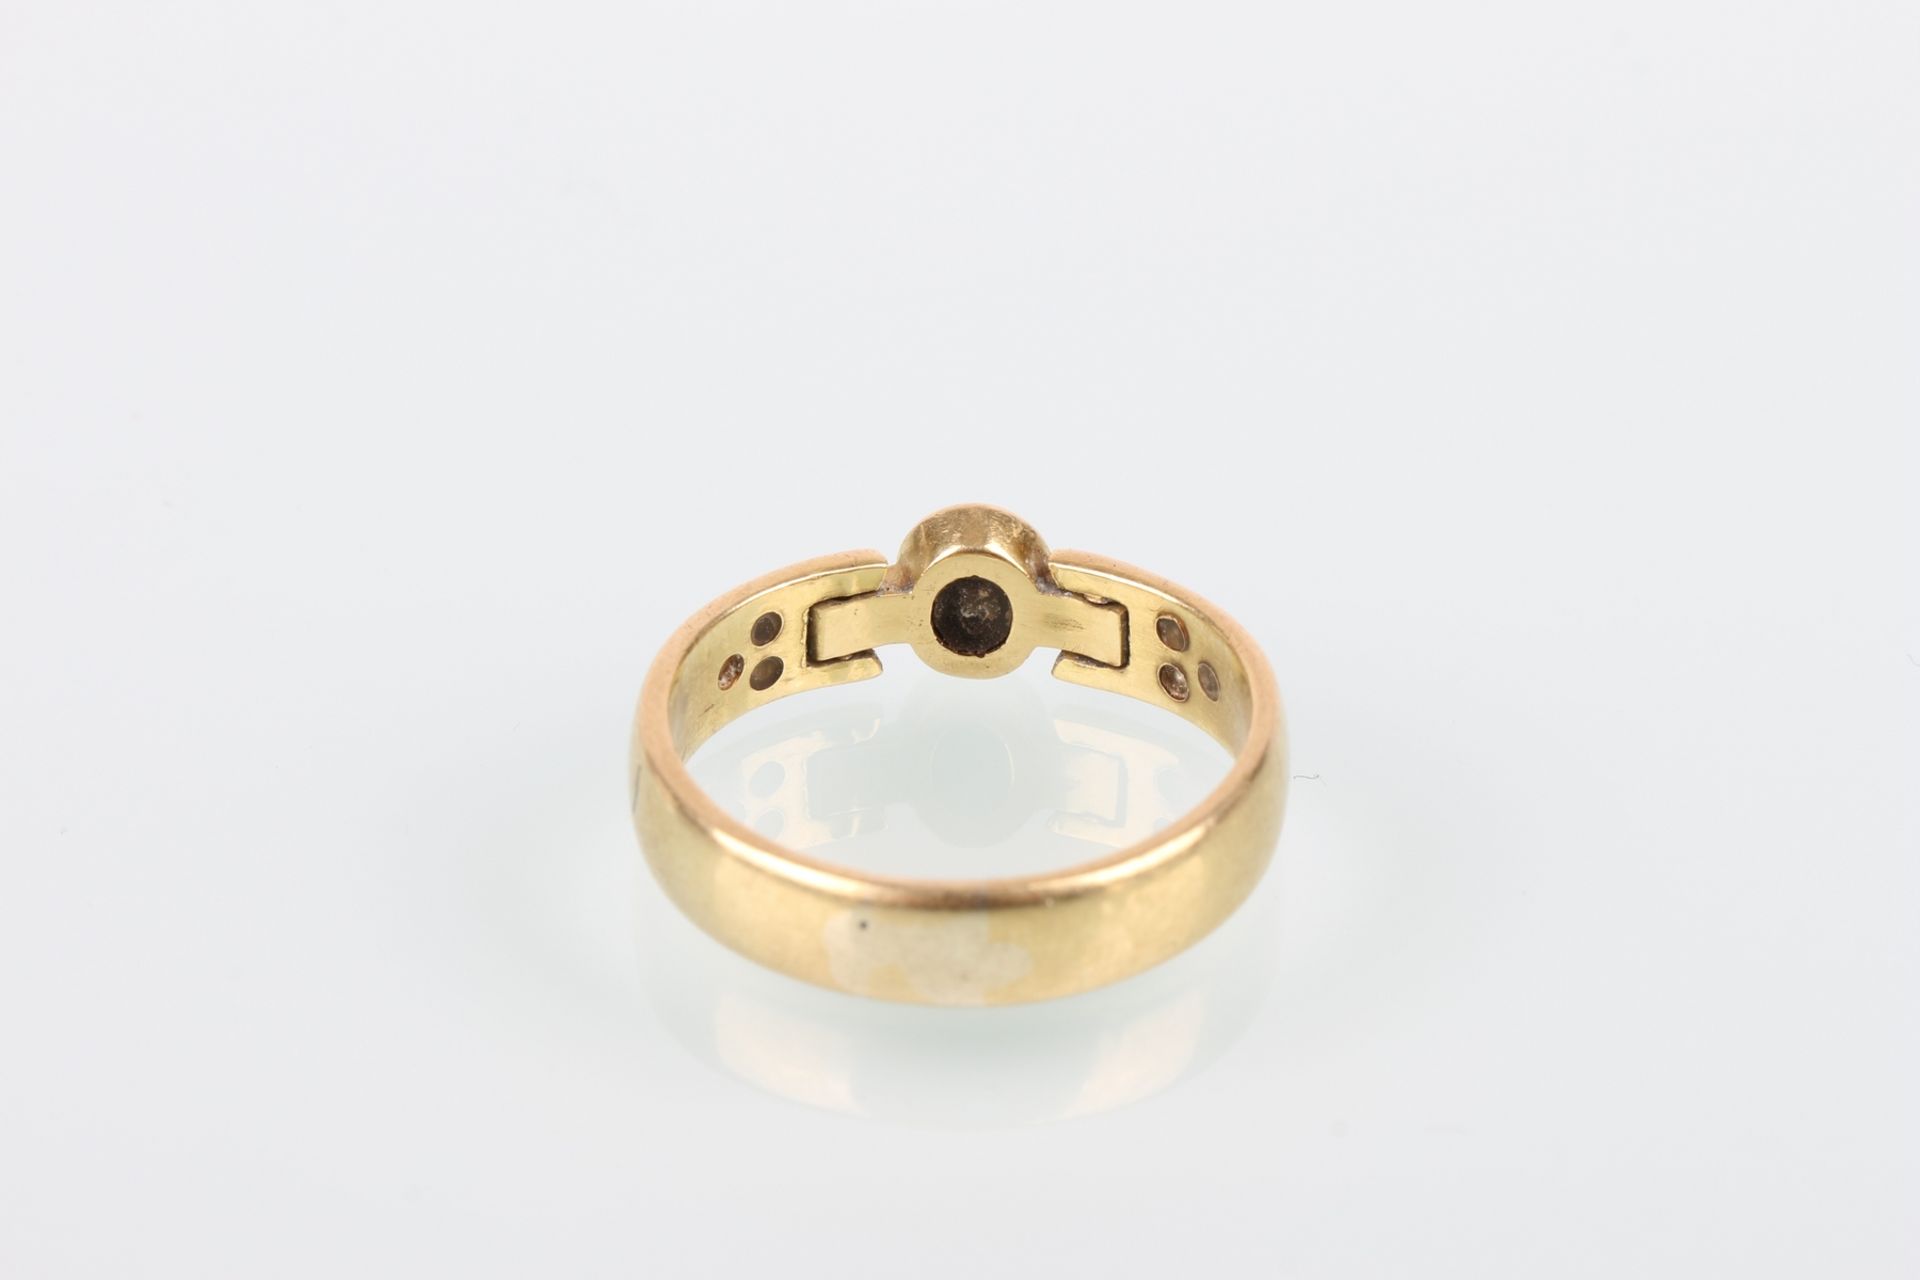 750 Gold Saphirring mit Brillanten, gold sapphire diamond ring, - Bild 5 aus 7